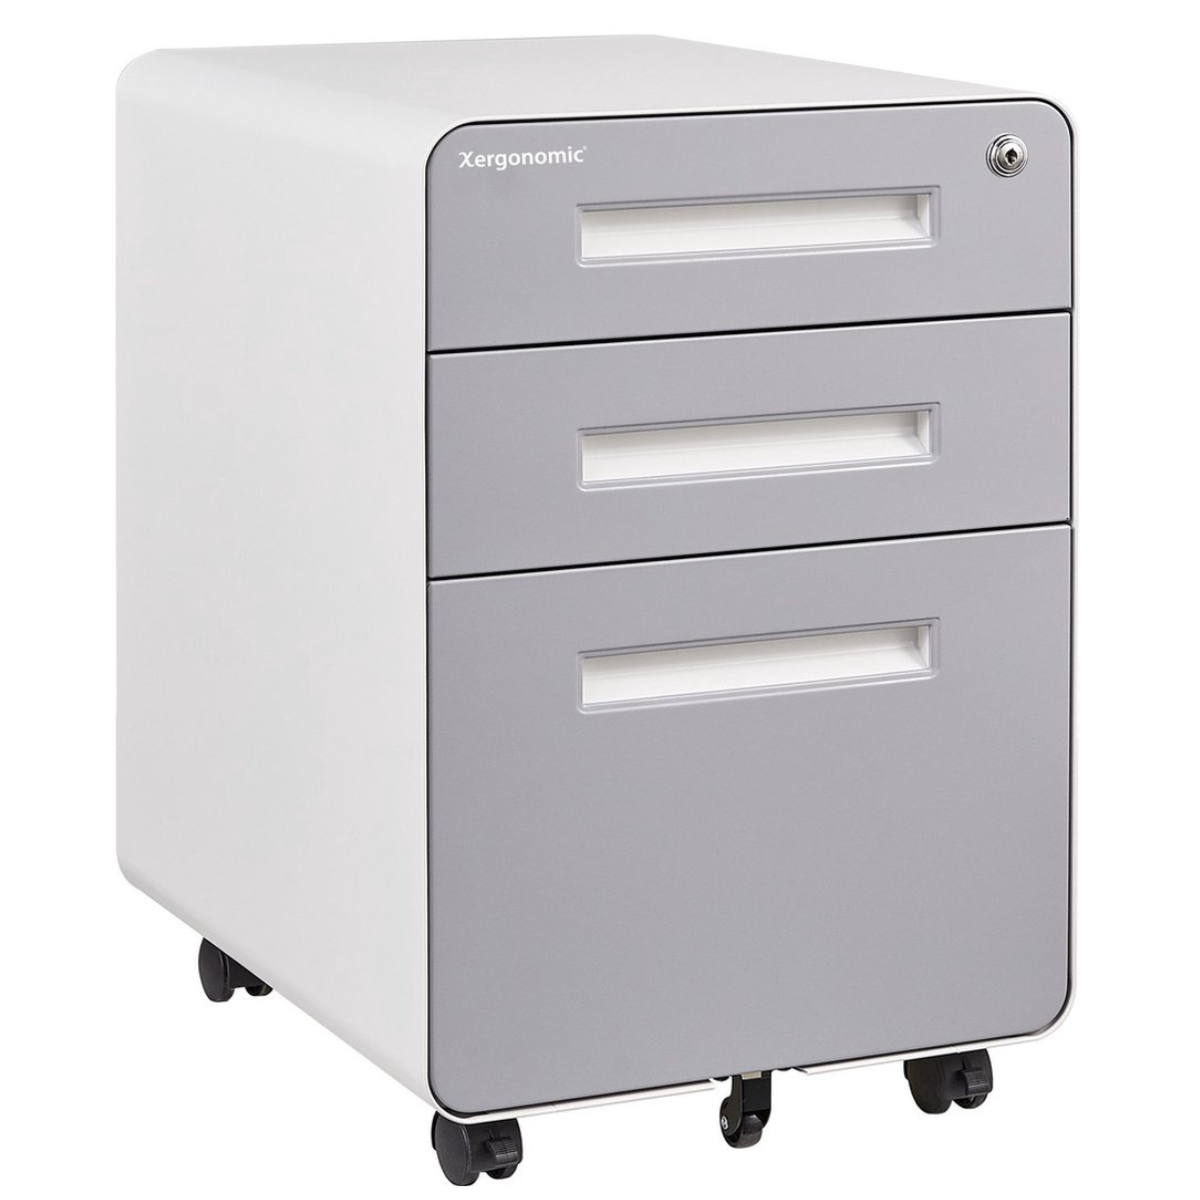 Xergonomic Gemini Dresser Drawer unit White with gray